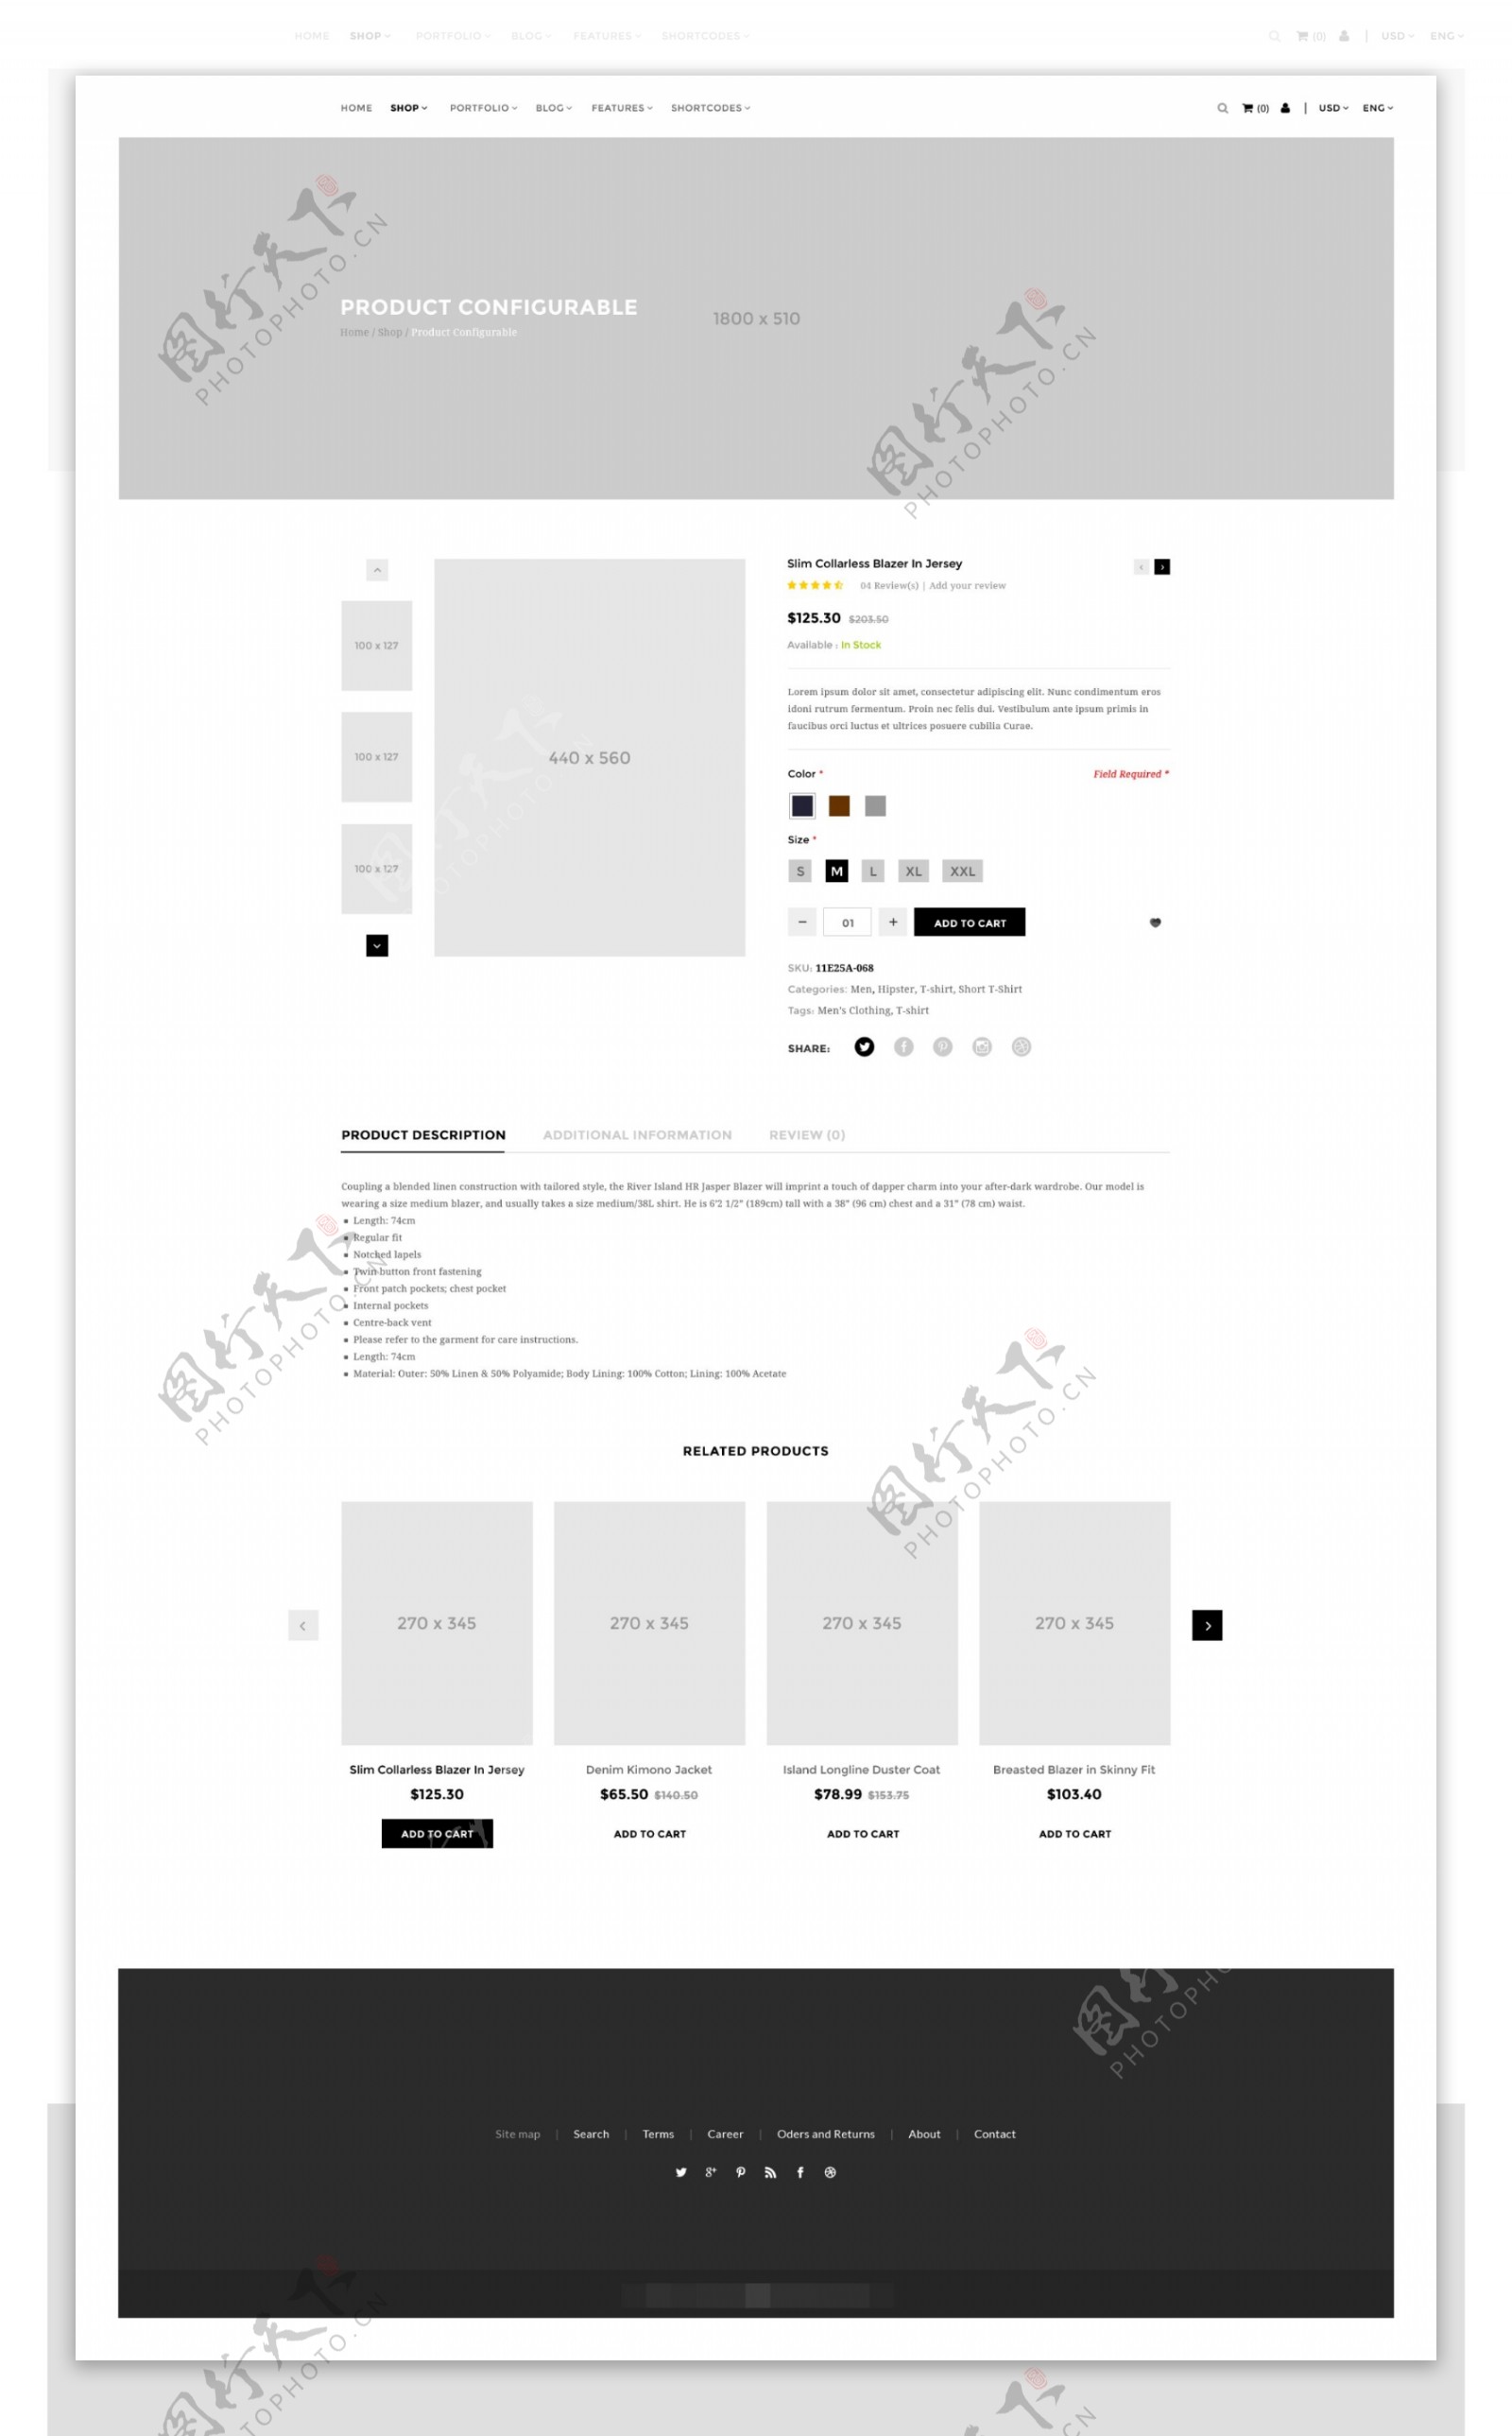 时尚网站产品介绍页面PSD模板